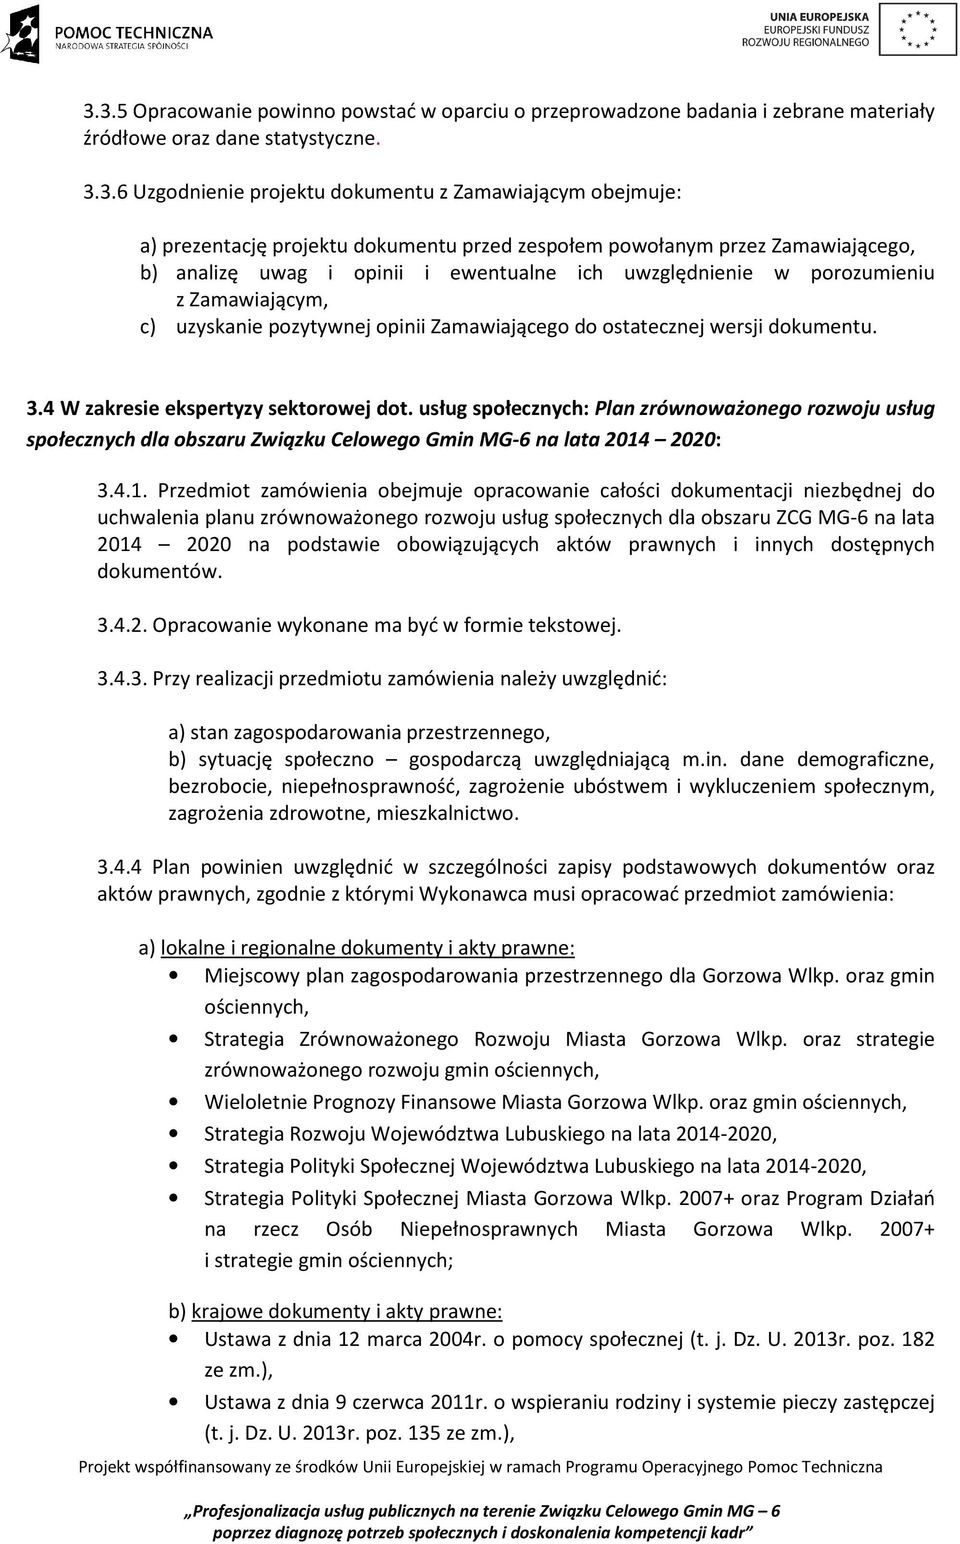 ostatecznej wersji dokumentu. 3.4 W zakresie ekspertyzy sektorowej dot. usług społecznych: Plan zrównoważonego rozwoju usług społecznych dla obszaru Związku Celowego Gmin MG-6 na lata 2014